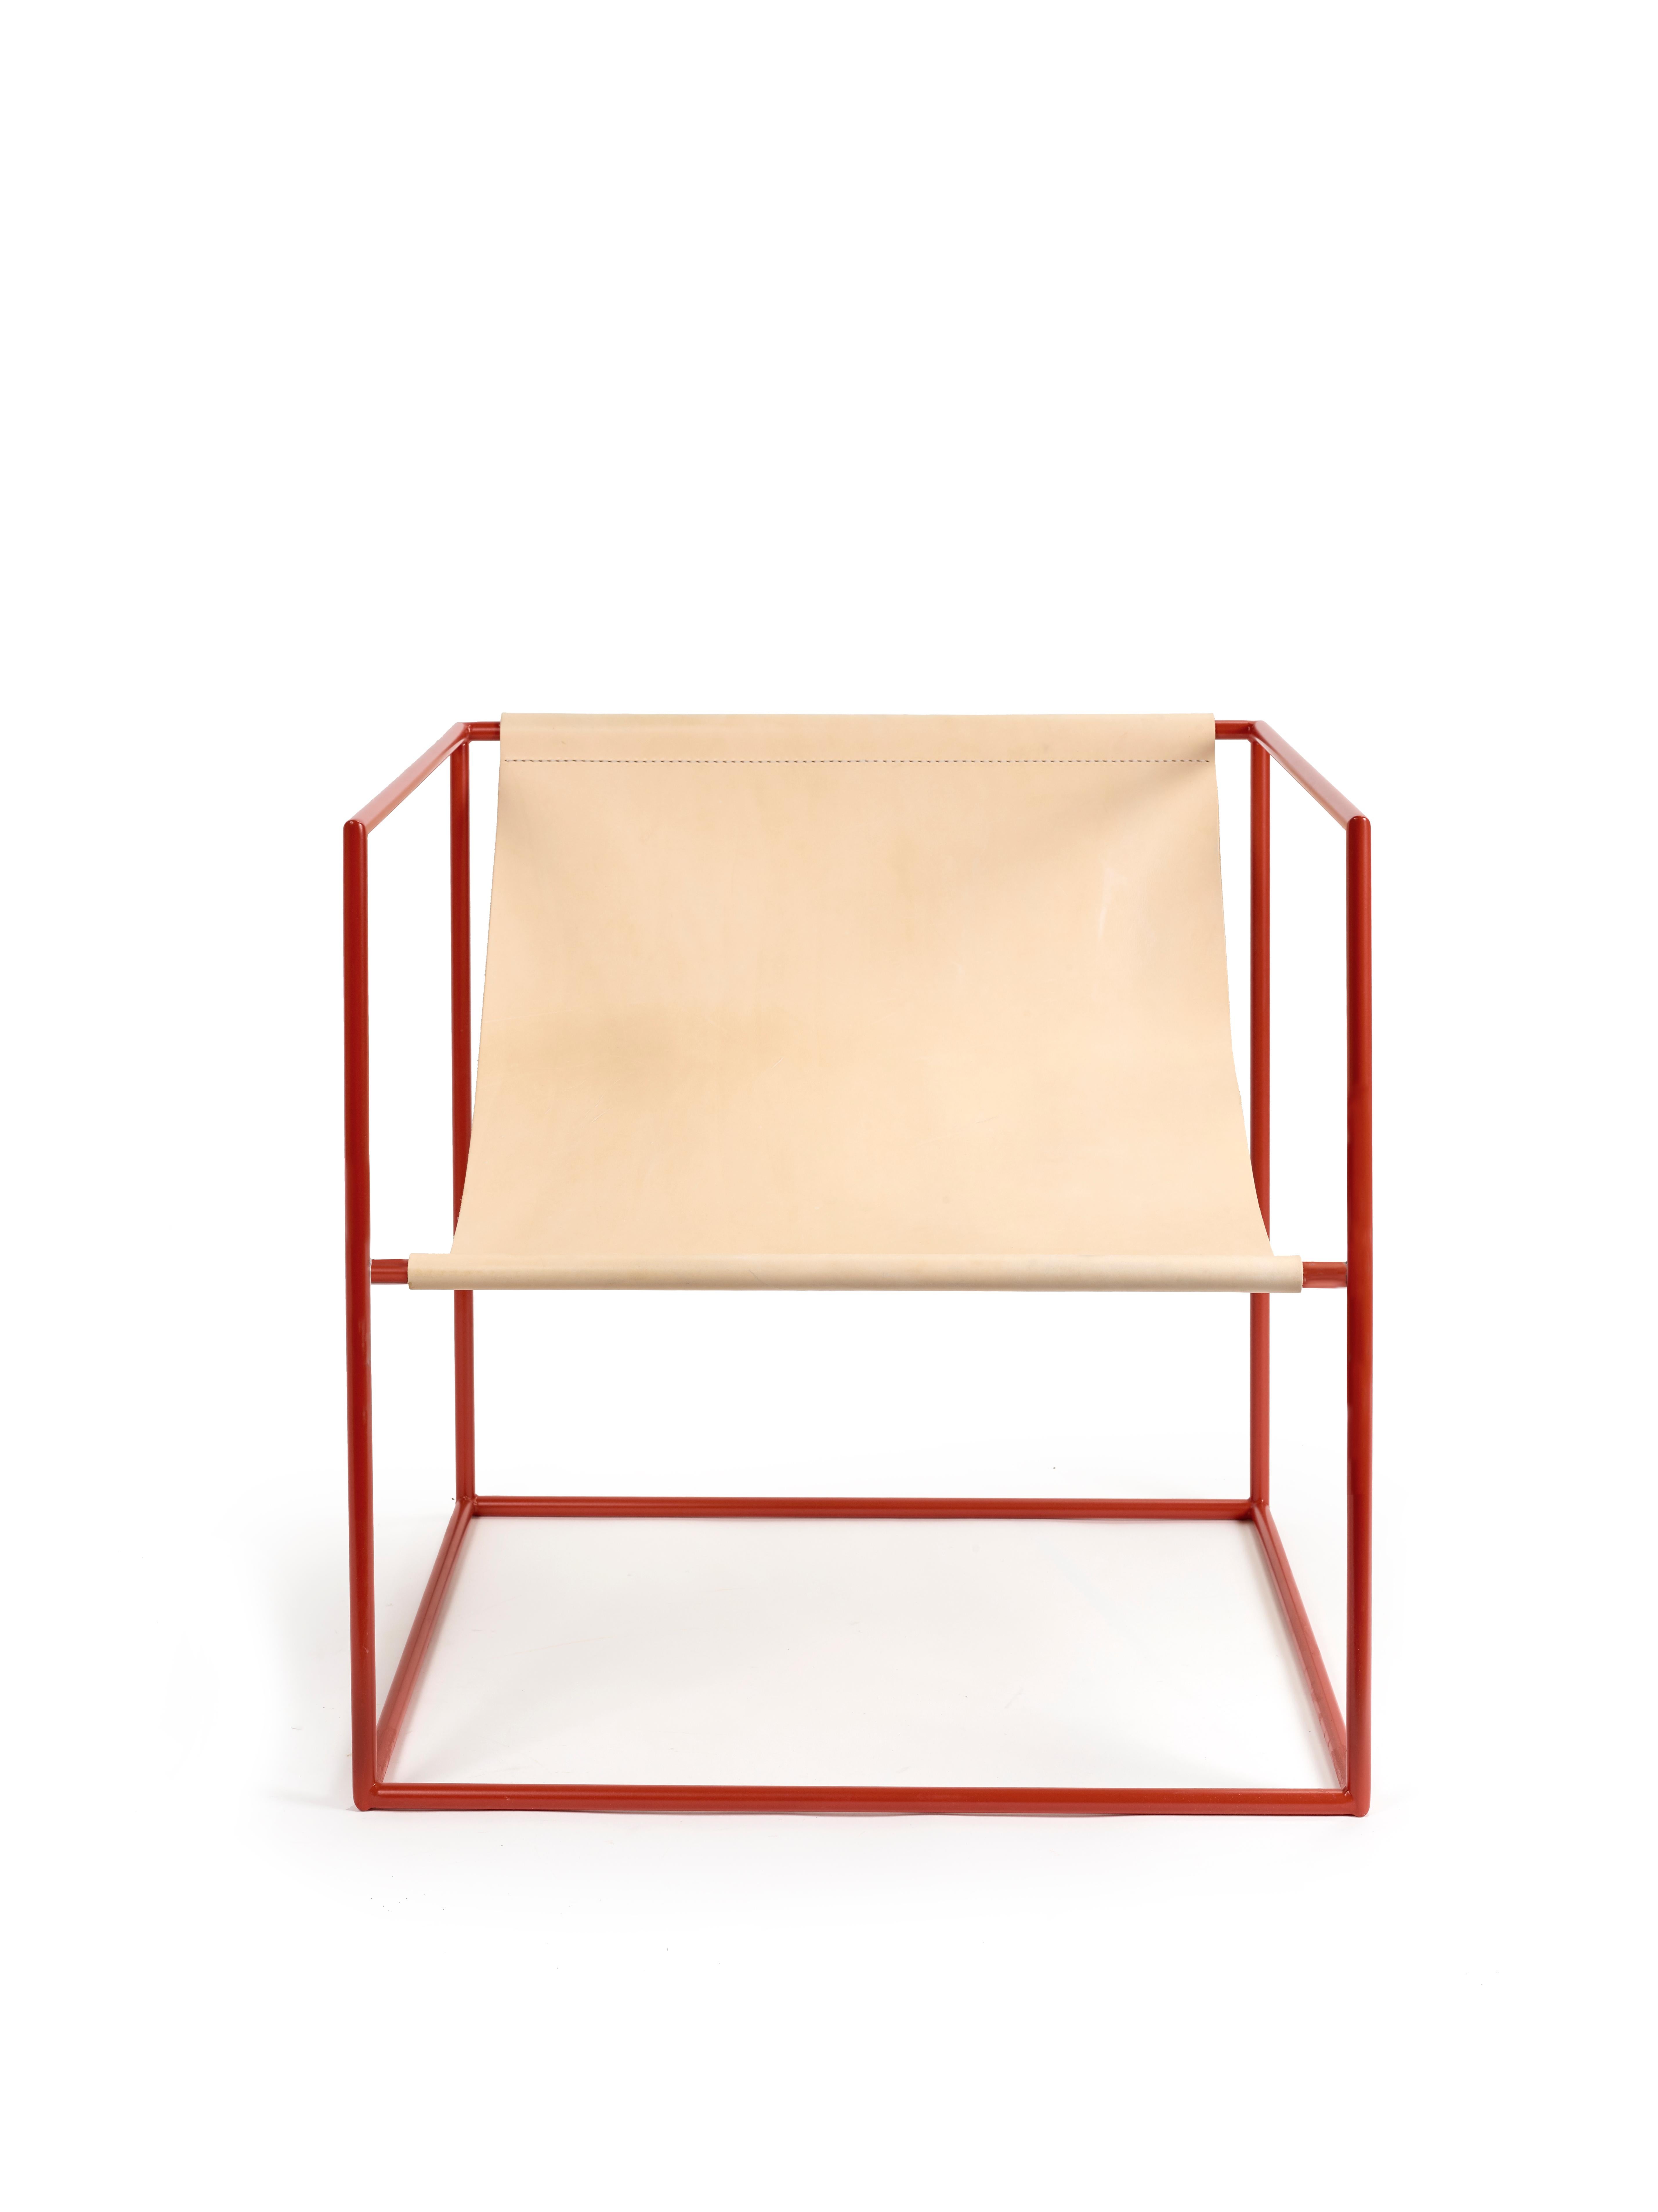 Solo Seat Sièges contemporains
par Muller Van severen

Modèle : rouge - cadre + cuir - siège (V9018021)
Dimensions : H. 61 cm x 62 cm x 62 cm (SH 34 cm) : H. 61 cm x 62 cm x 62 cm (SH 34 cm)

Contrairement à un canapé massif qui englobe une partie